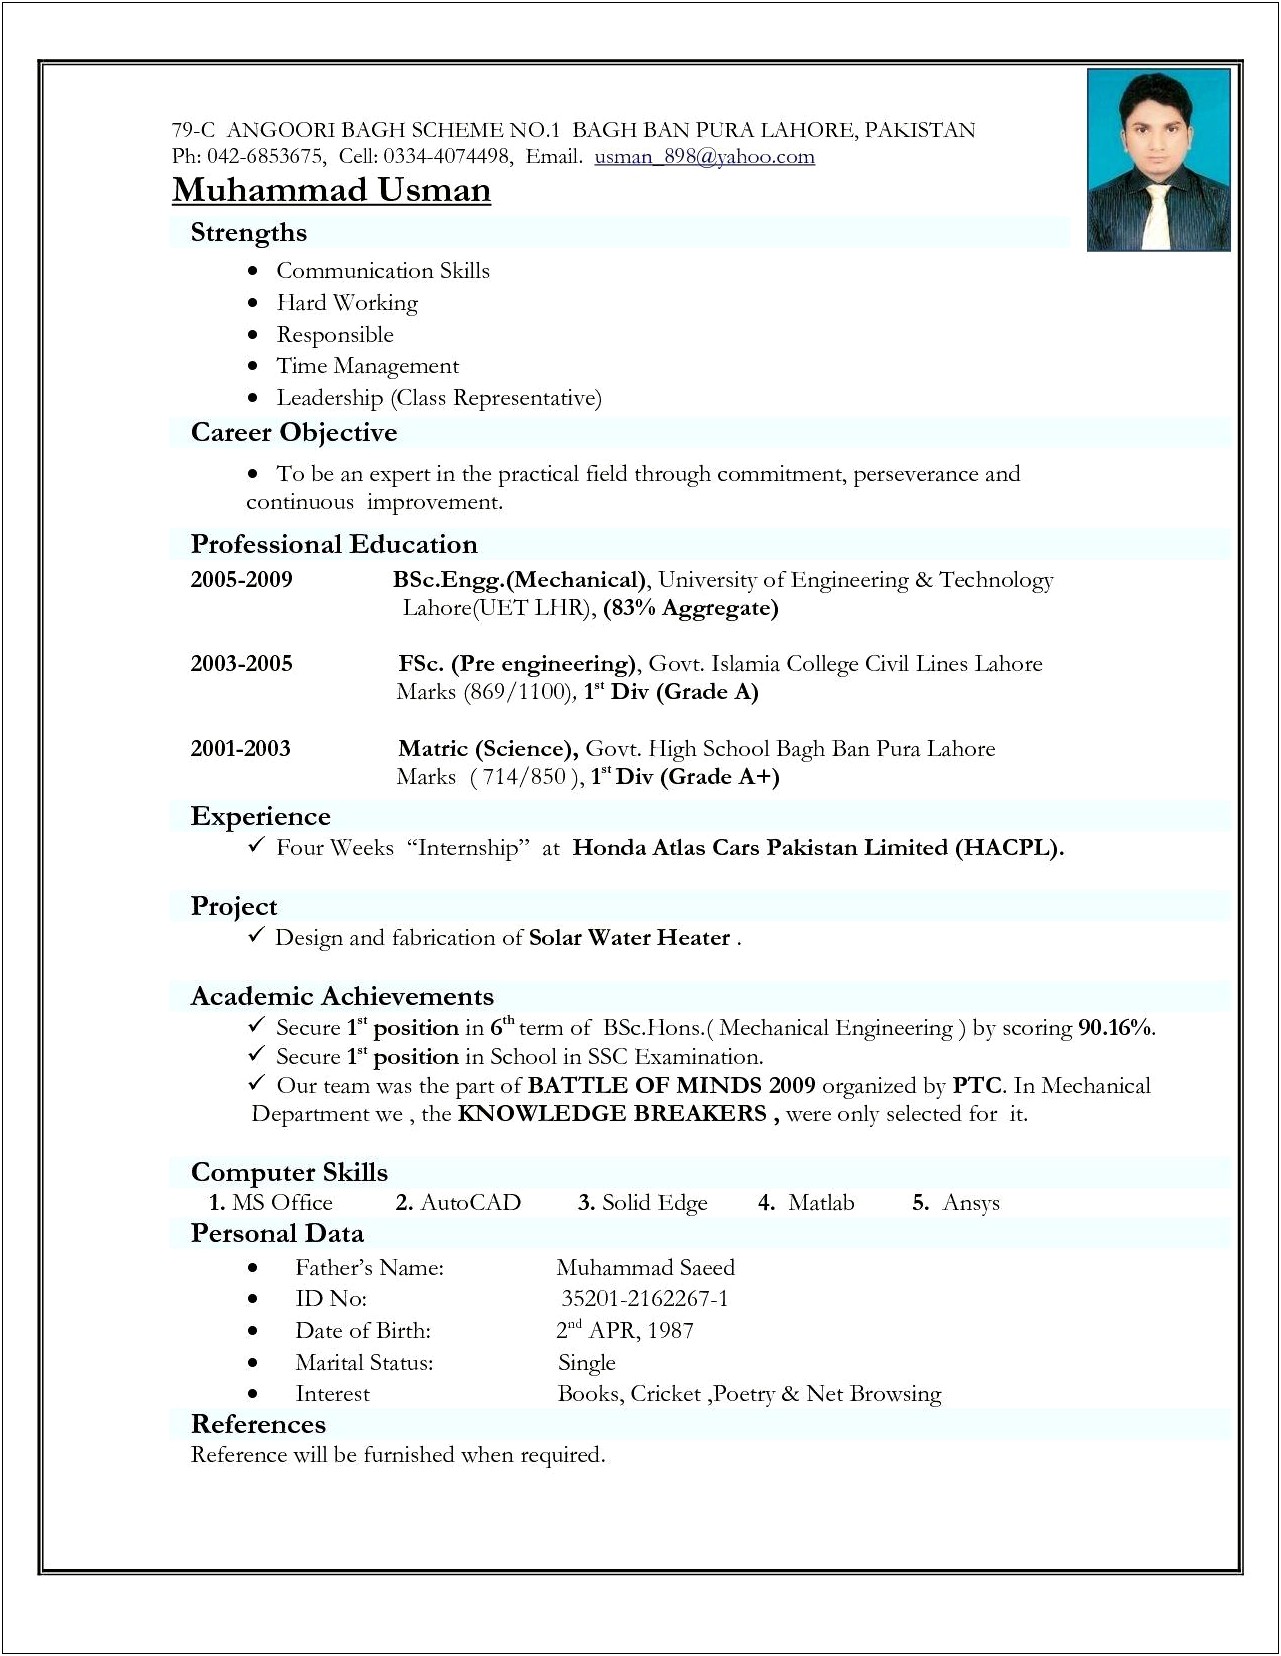 Curriculum Vitae Resume Samples In India